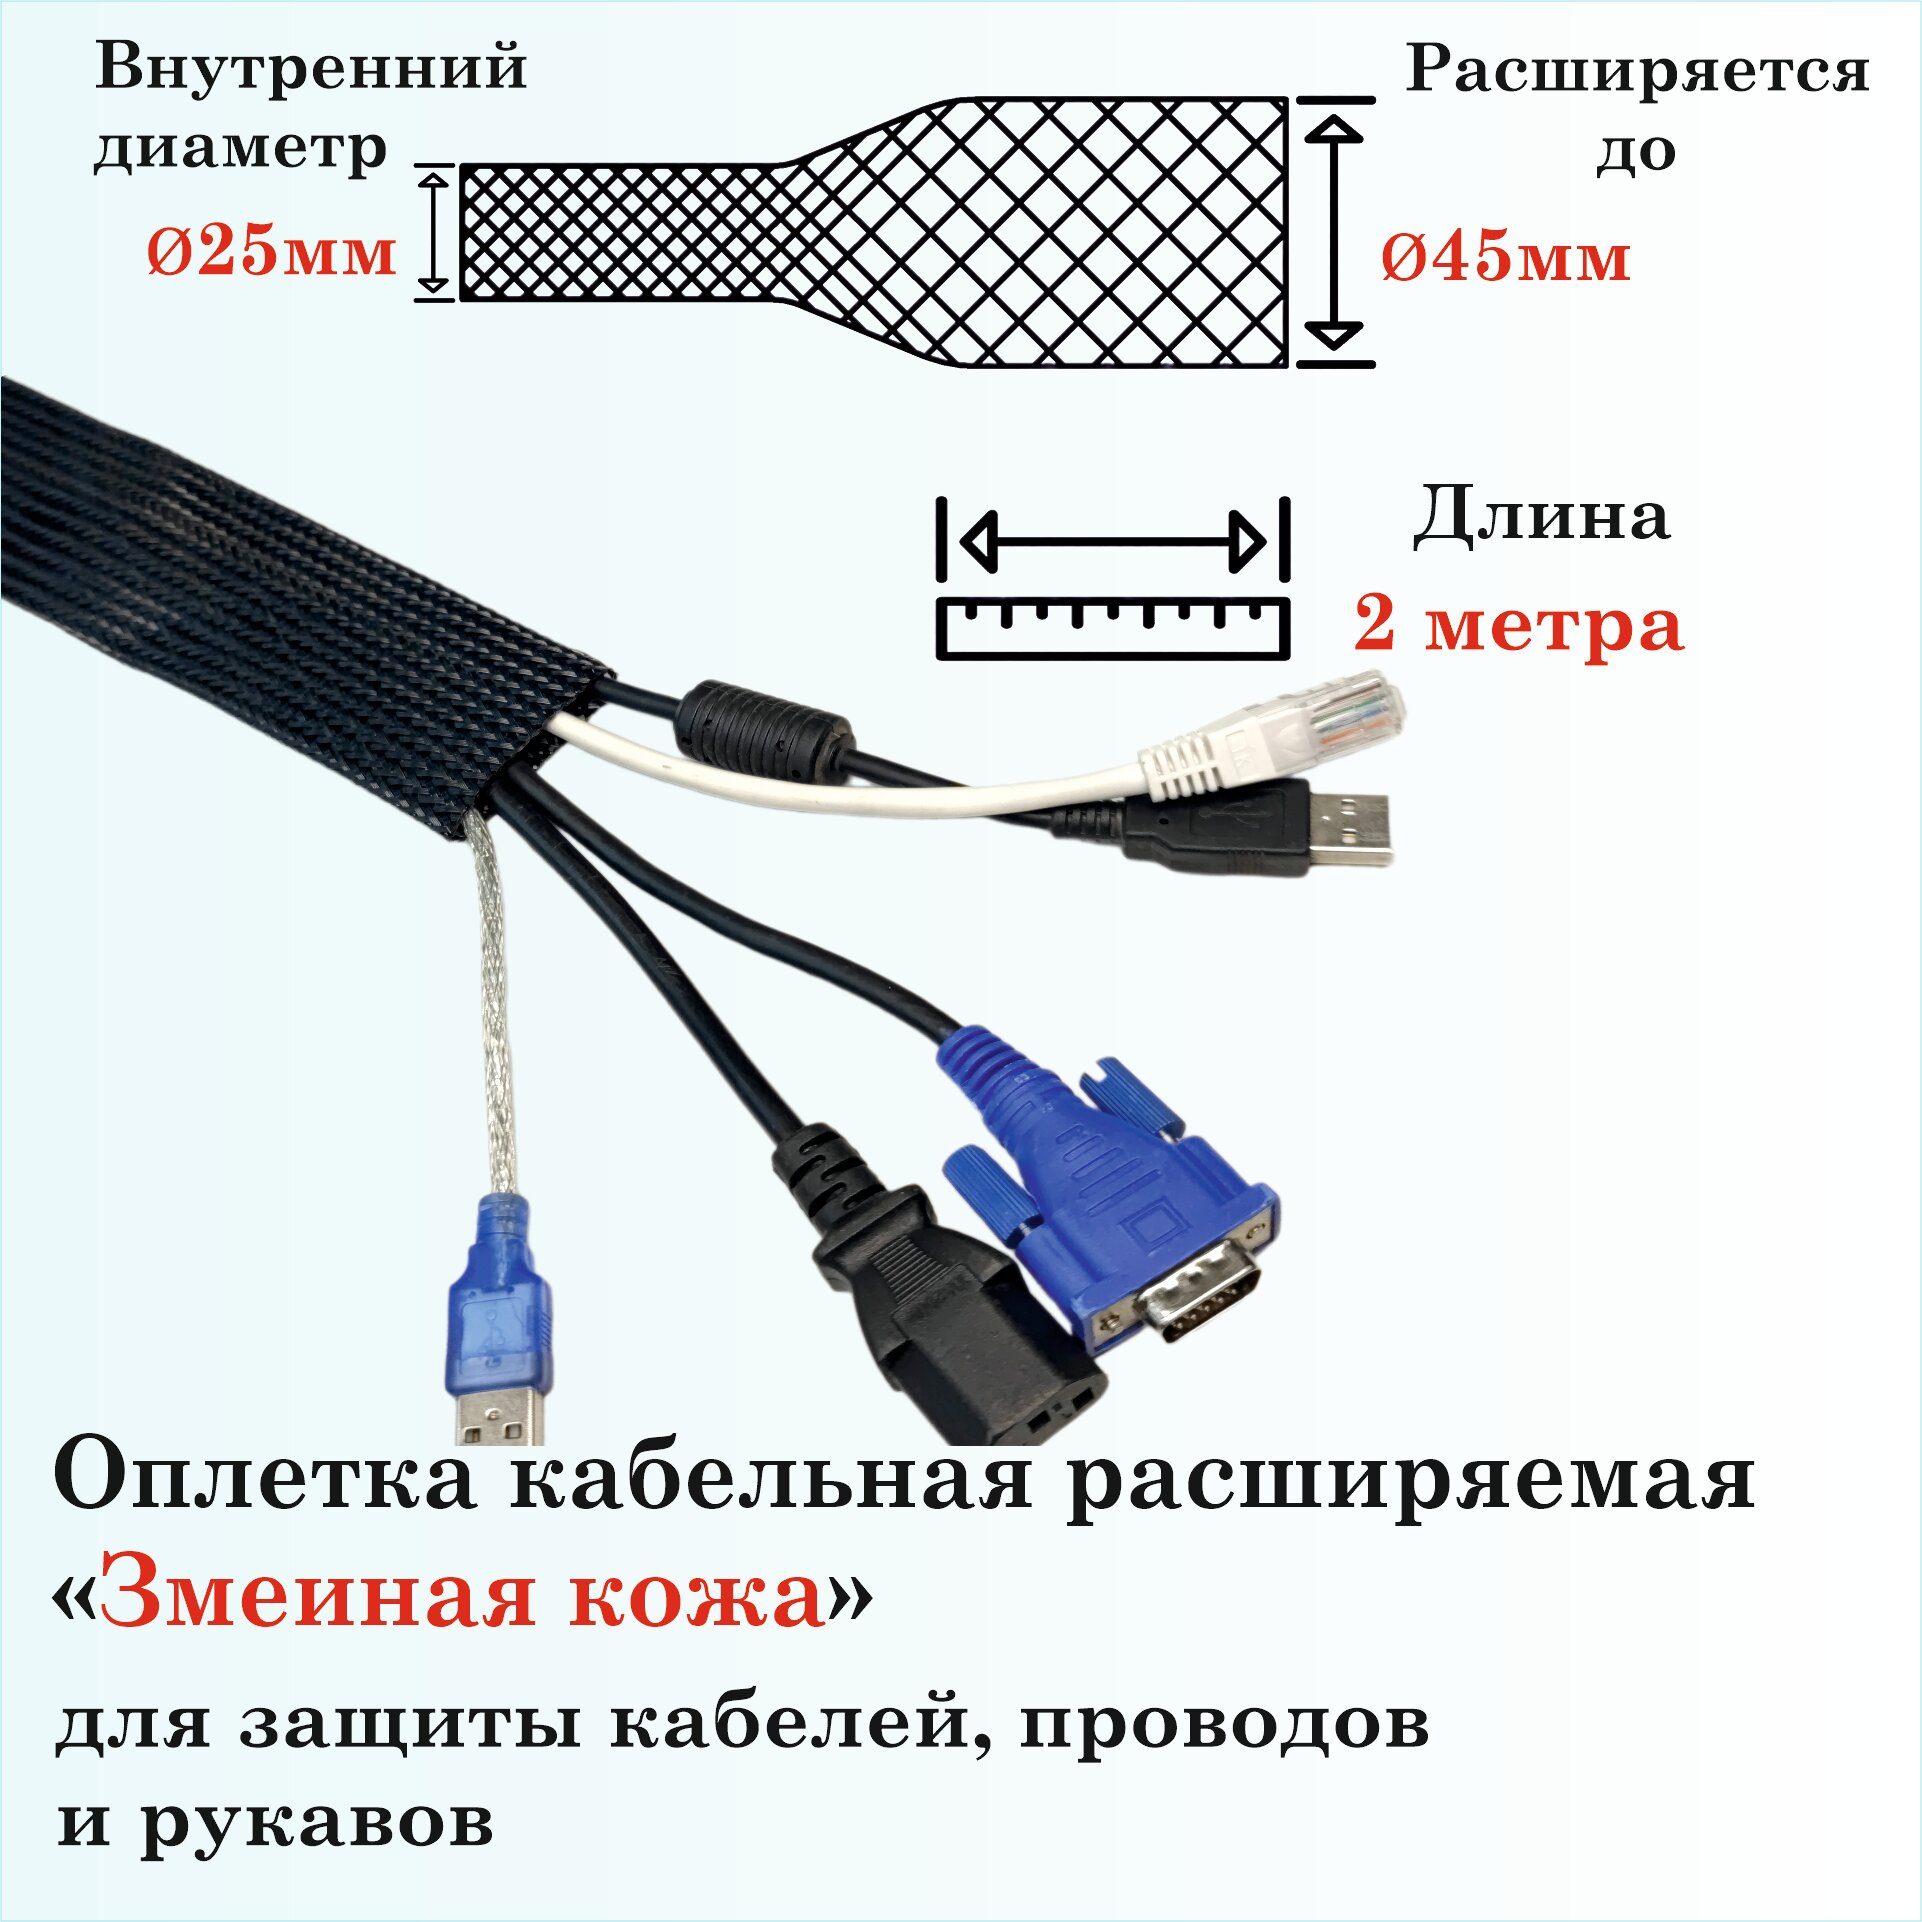 Оплетка кабельная расширяемая для защиты кабелей и проводов "Змеиная кожа" 25мм, 2м, черная